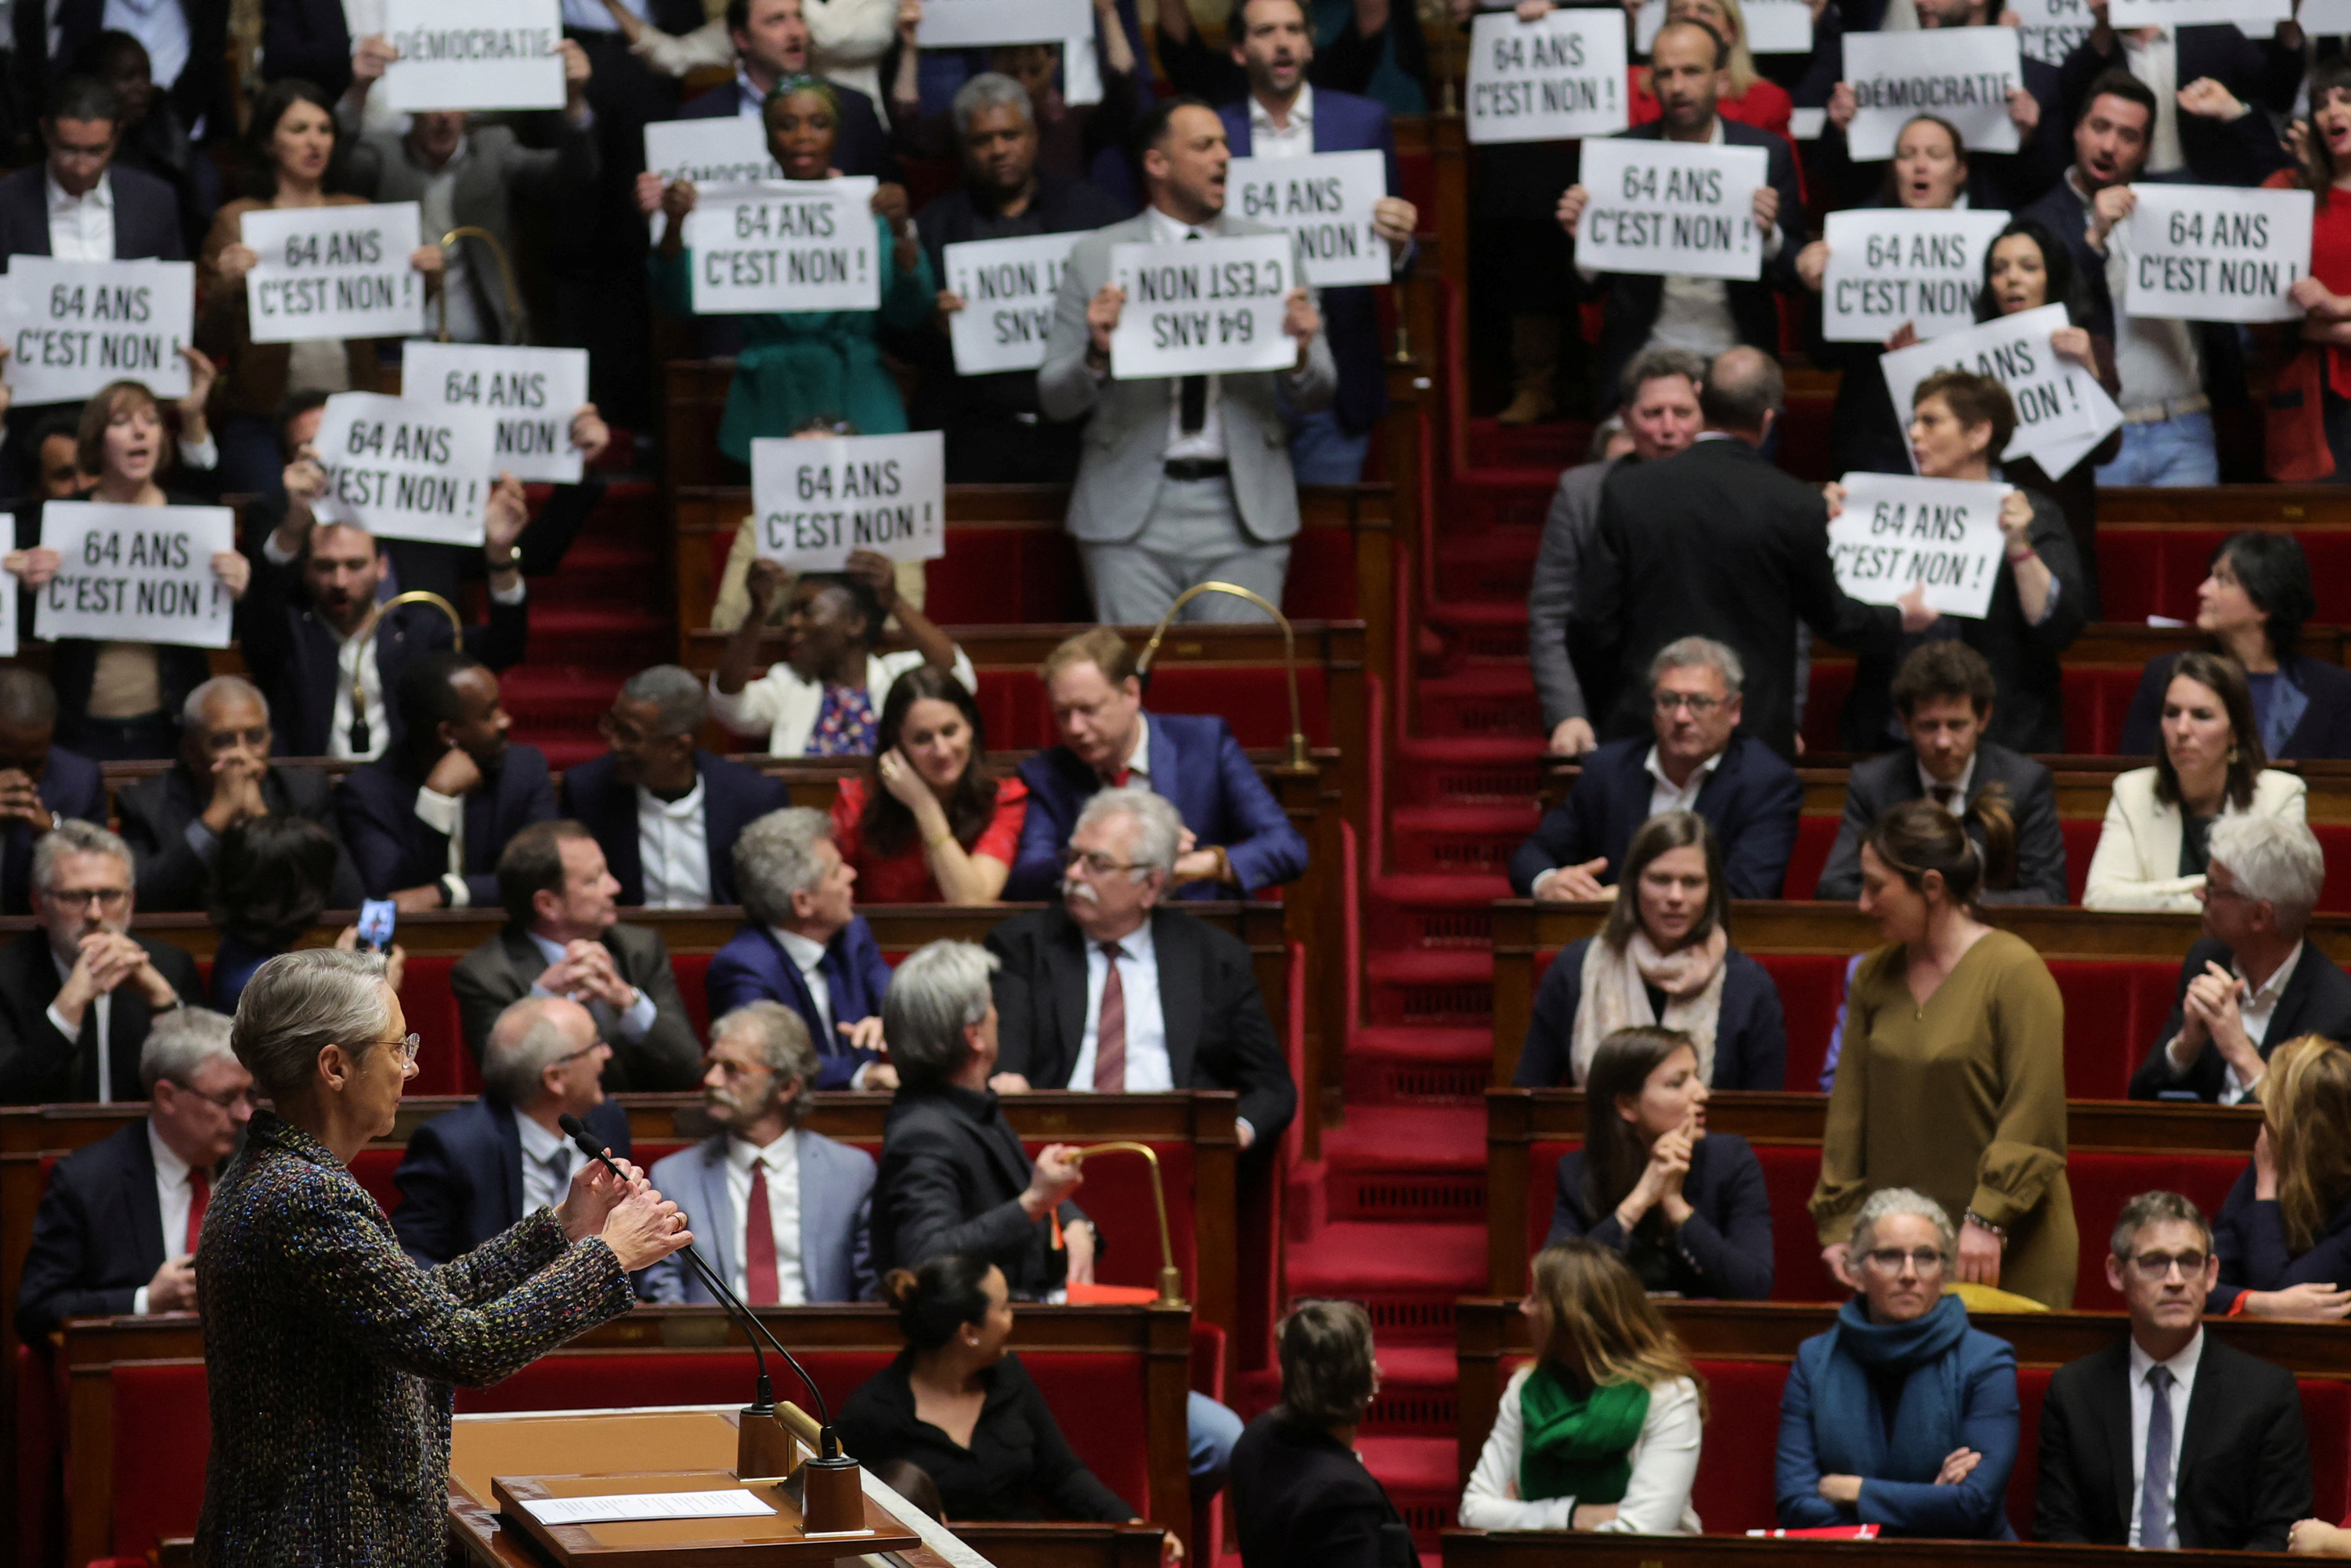 Miembros del parlamento francés muestran placas de rechazo a la reforma de pensiones, mientras la jefa del gabinete de Macron, Elisabeth Borne, aguarda para empezar a defender la aplicación del decreto (REUTERS/Pascal Rossignol)